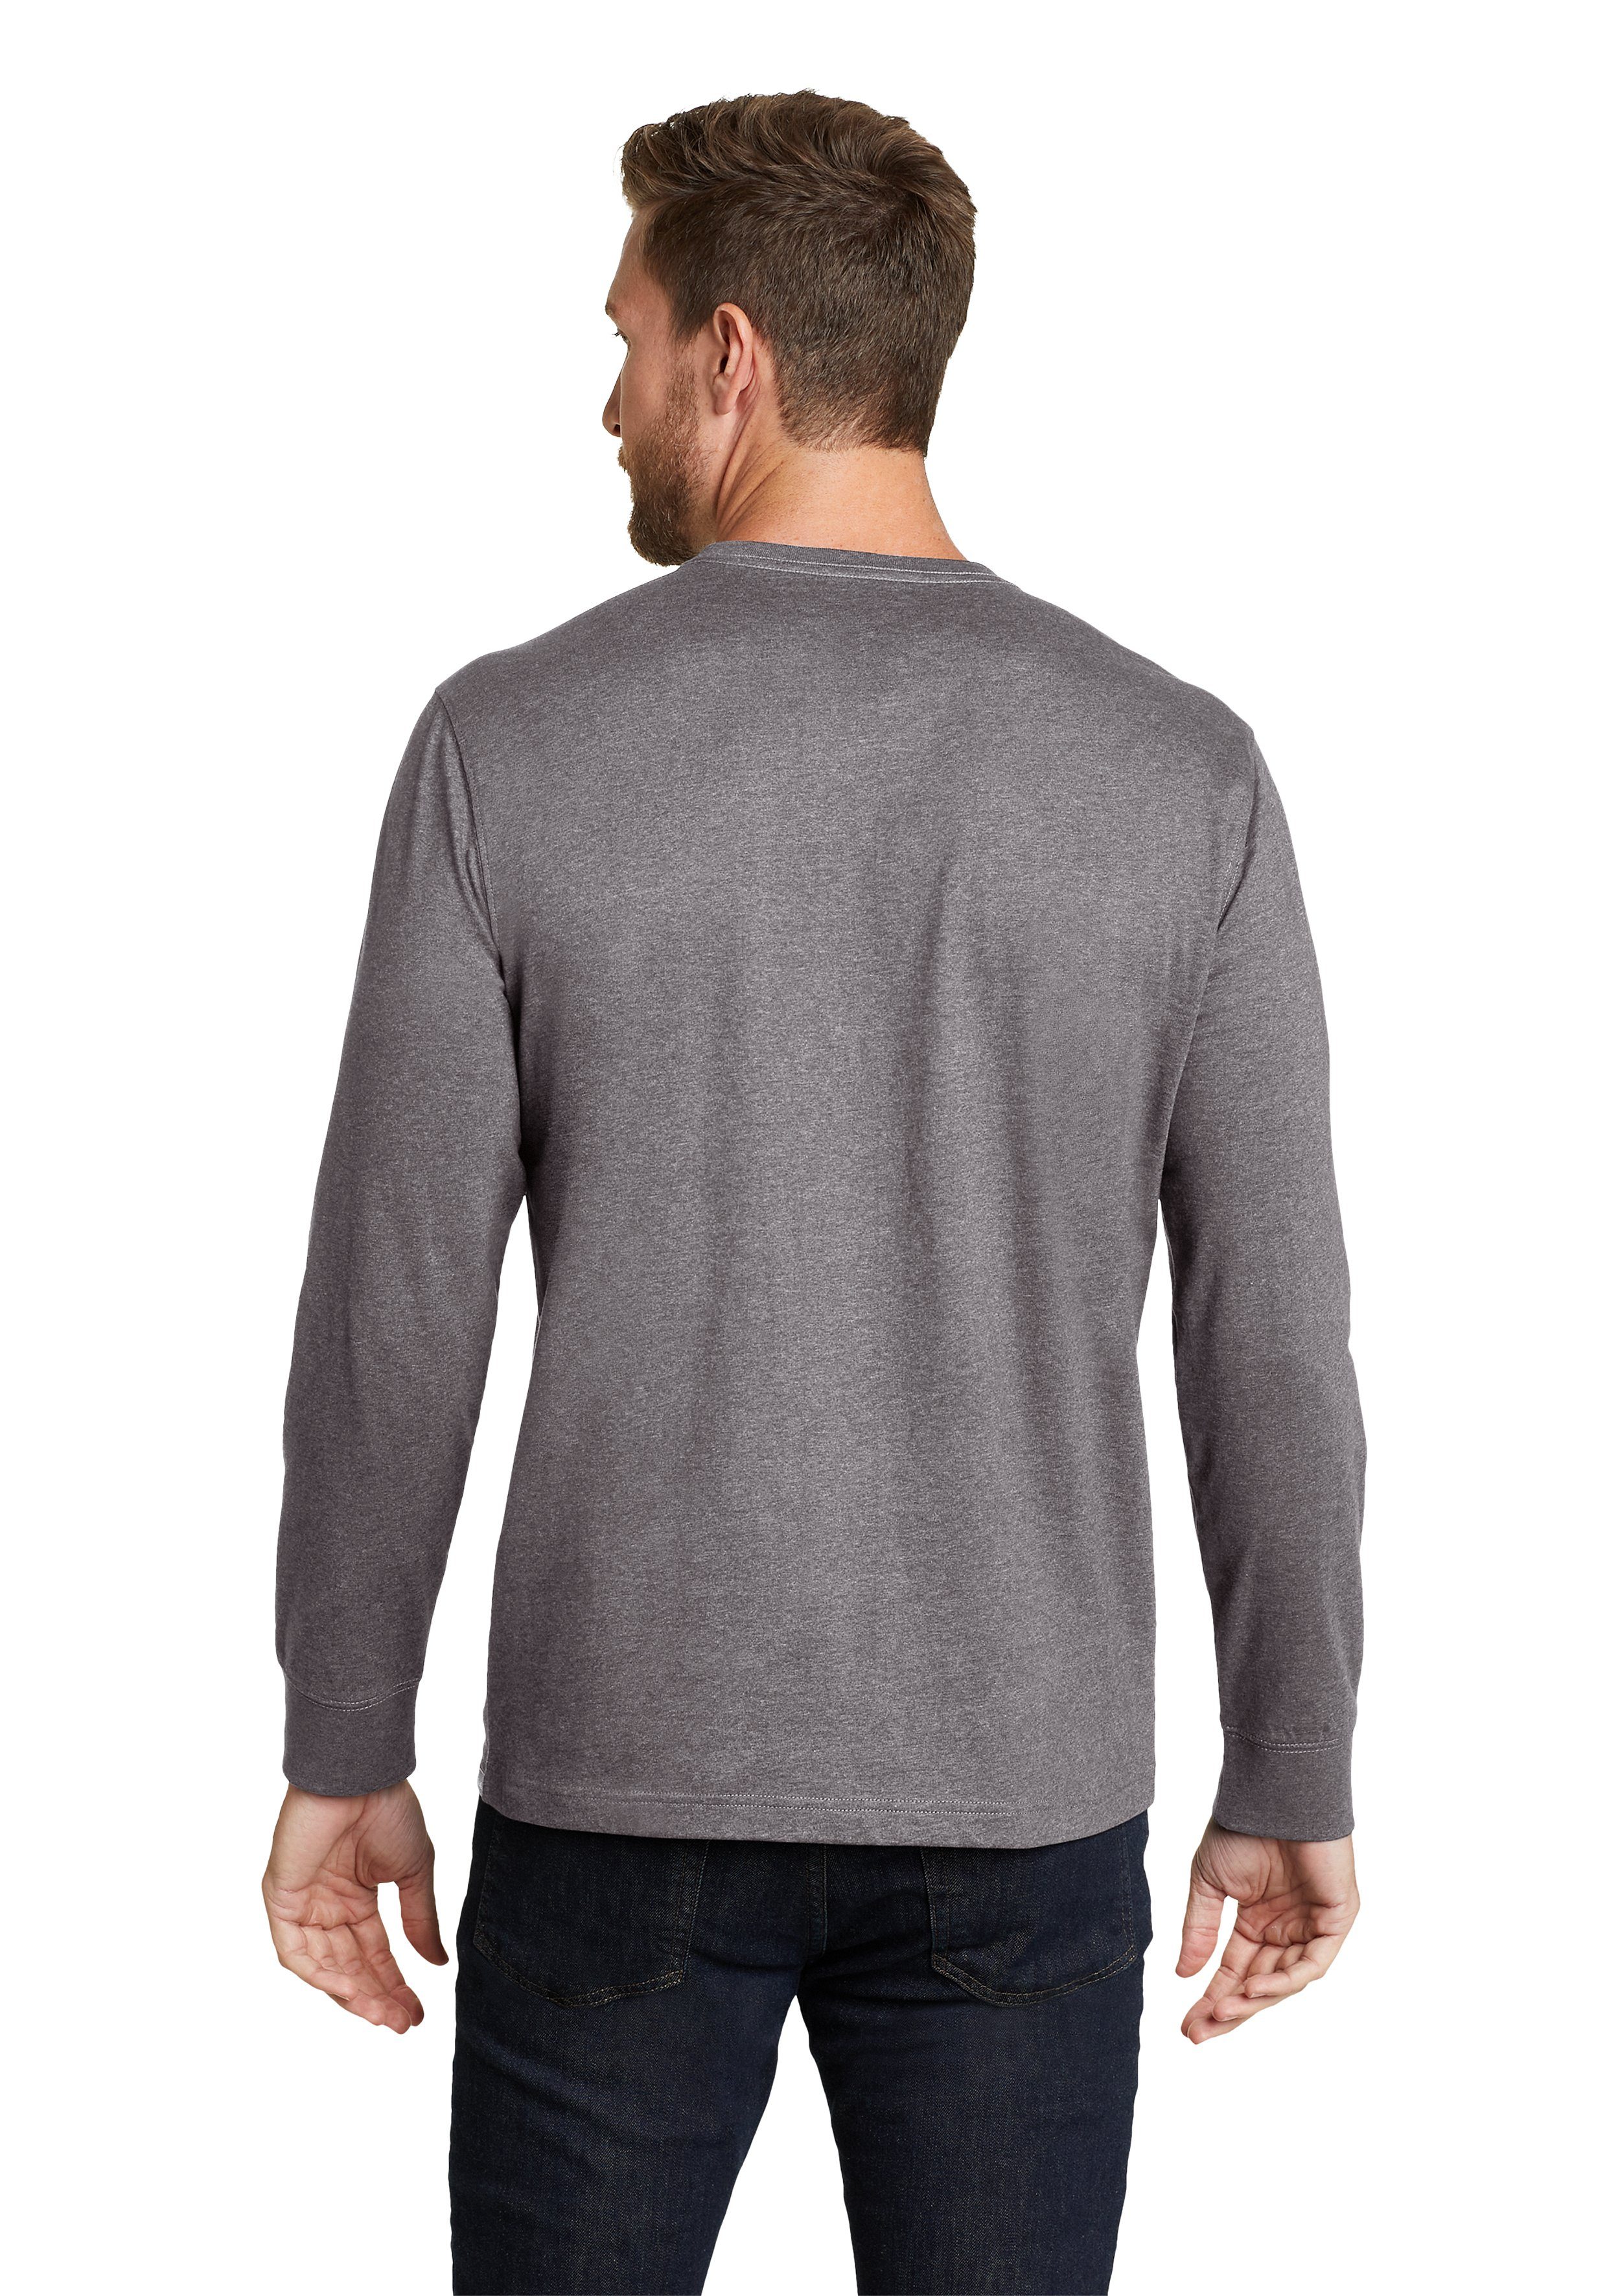 Pro mit Wash Shirt Legend Bauer Langarm Eddie - Baumwolle Meliertes 100% Tasche Grau Langarmshirt